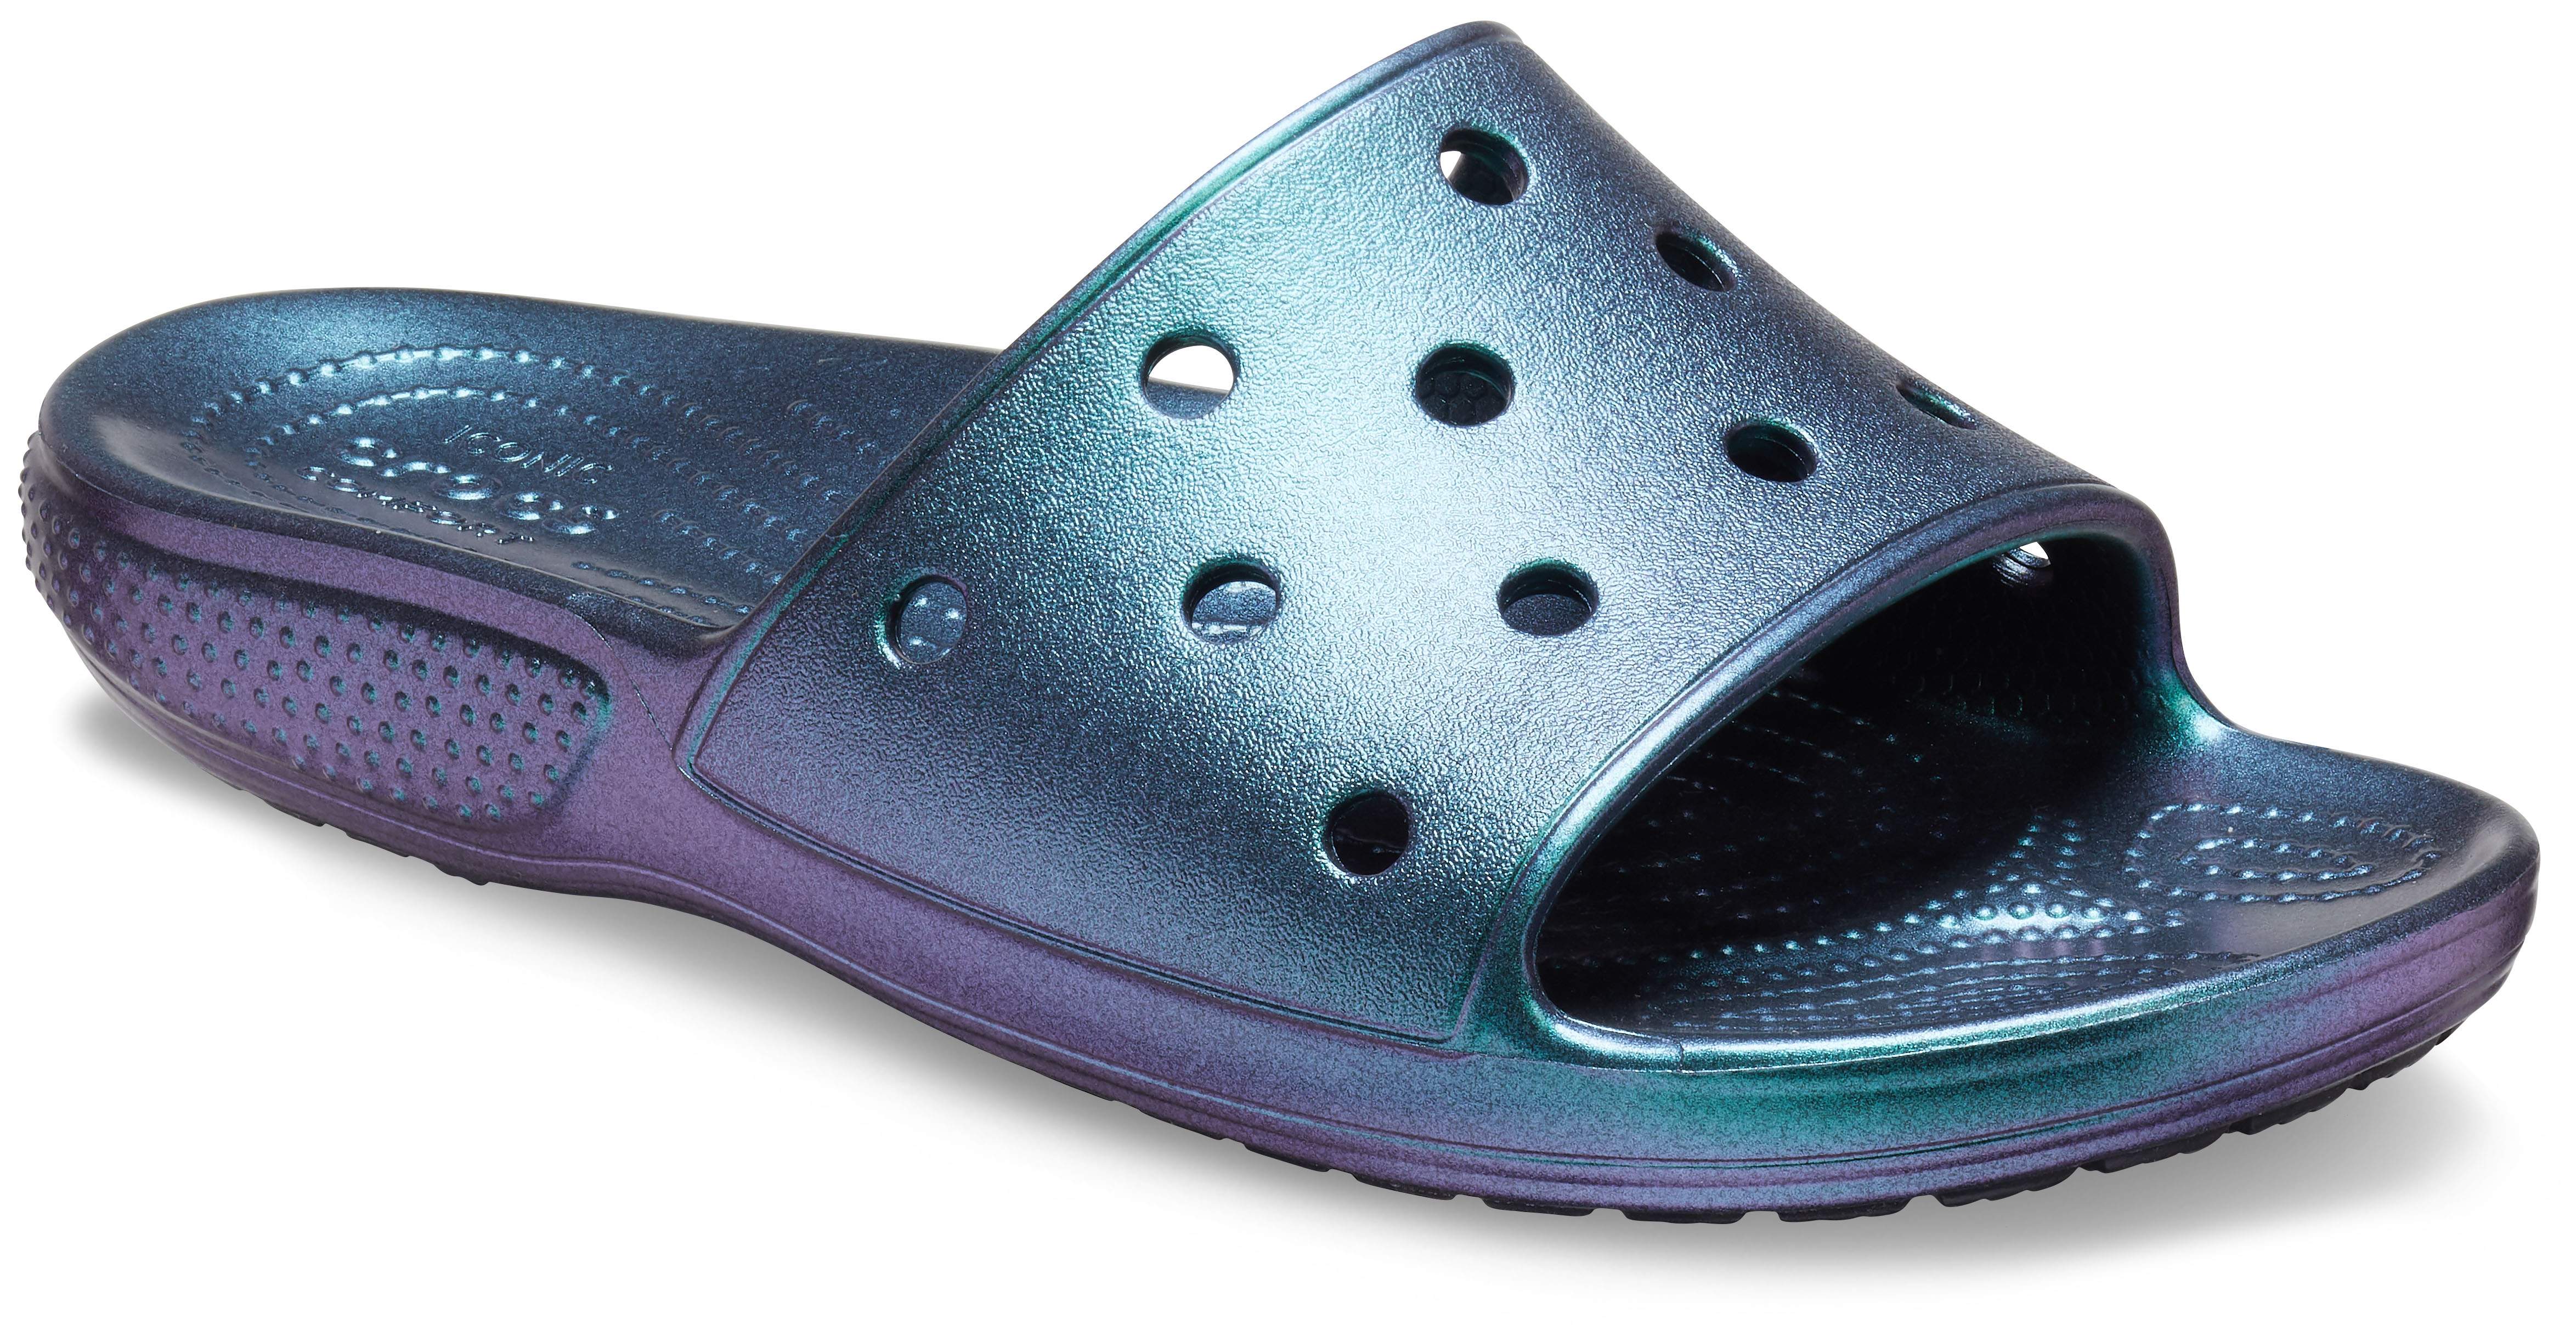 crocs slide on